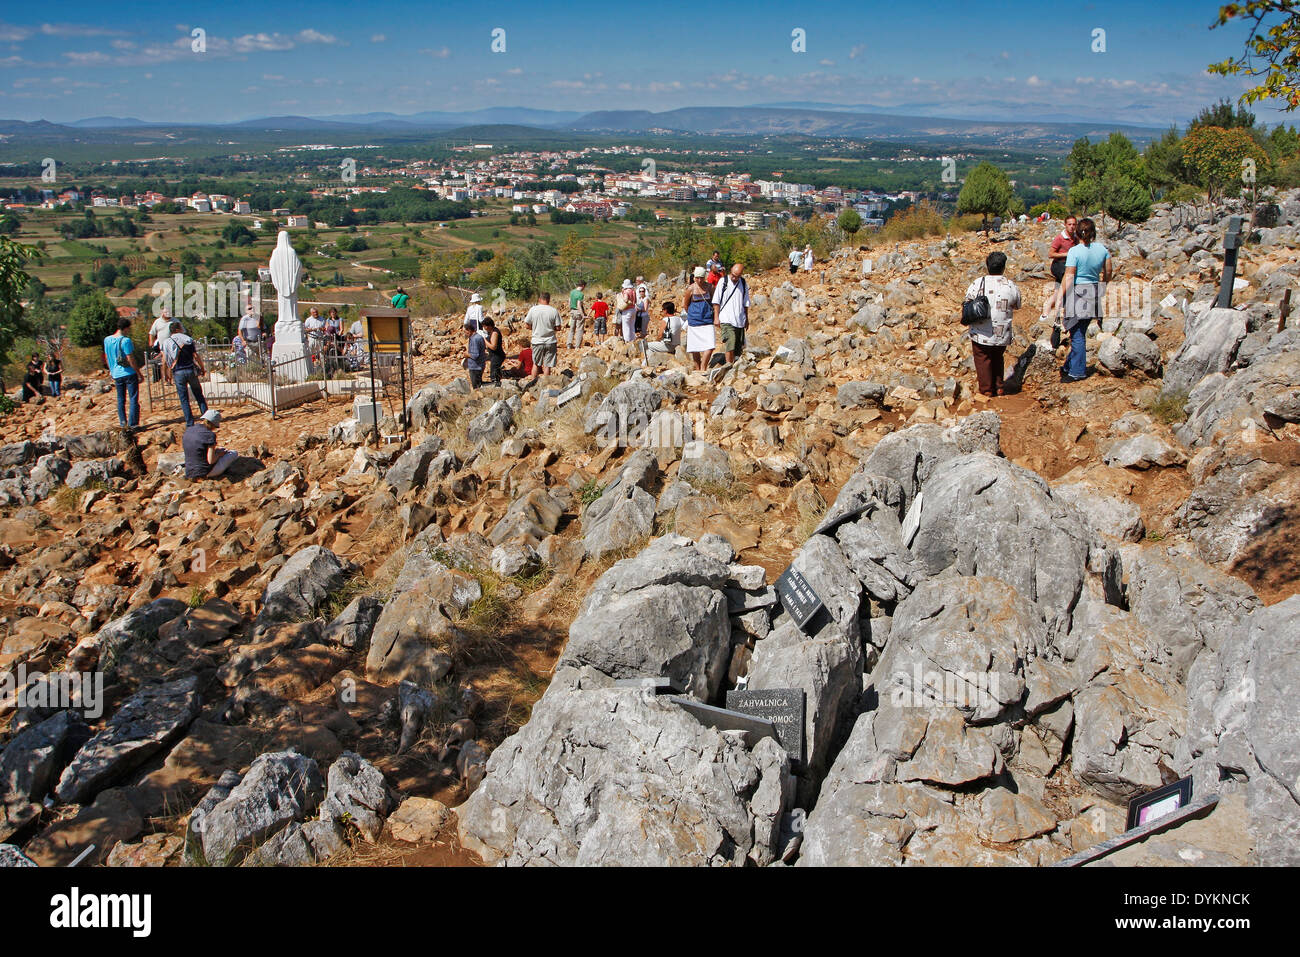 MEDJUGORJE, BOSNIA AND HERZEGOVINA - SEPTEMBER 8: Hill of apparitions of the Virgin Mary on September 8, 2009 in Medjugorje. Stock Photo